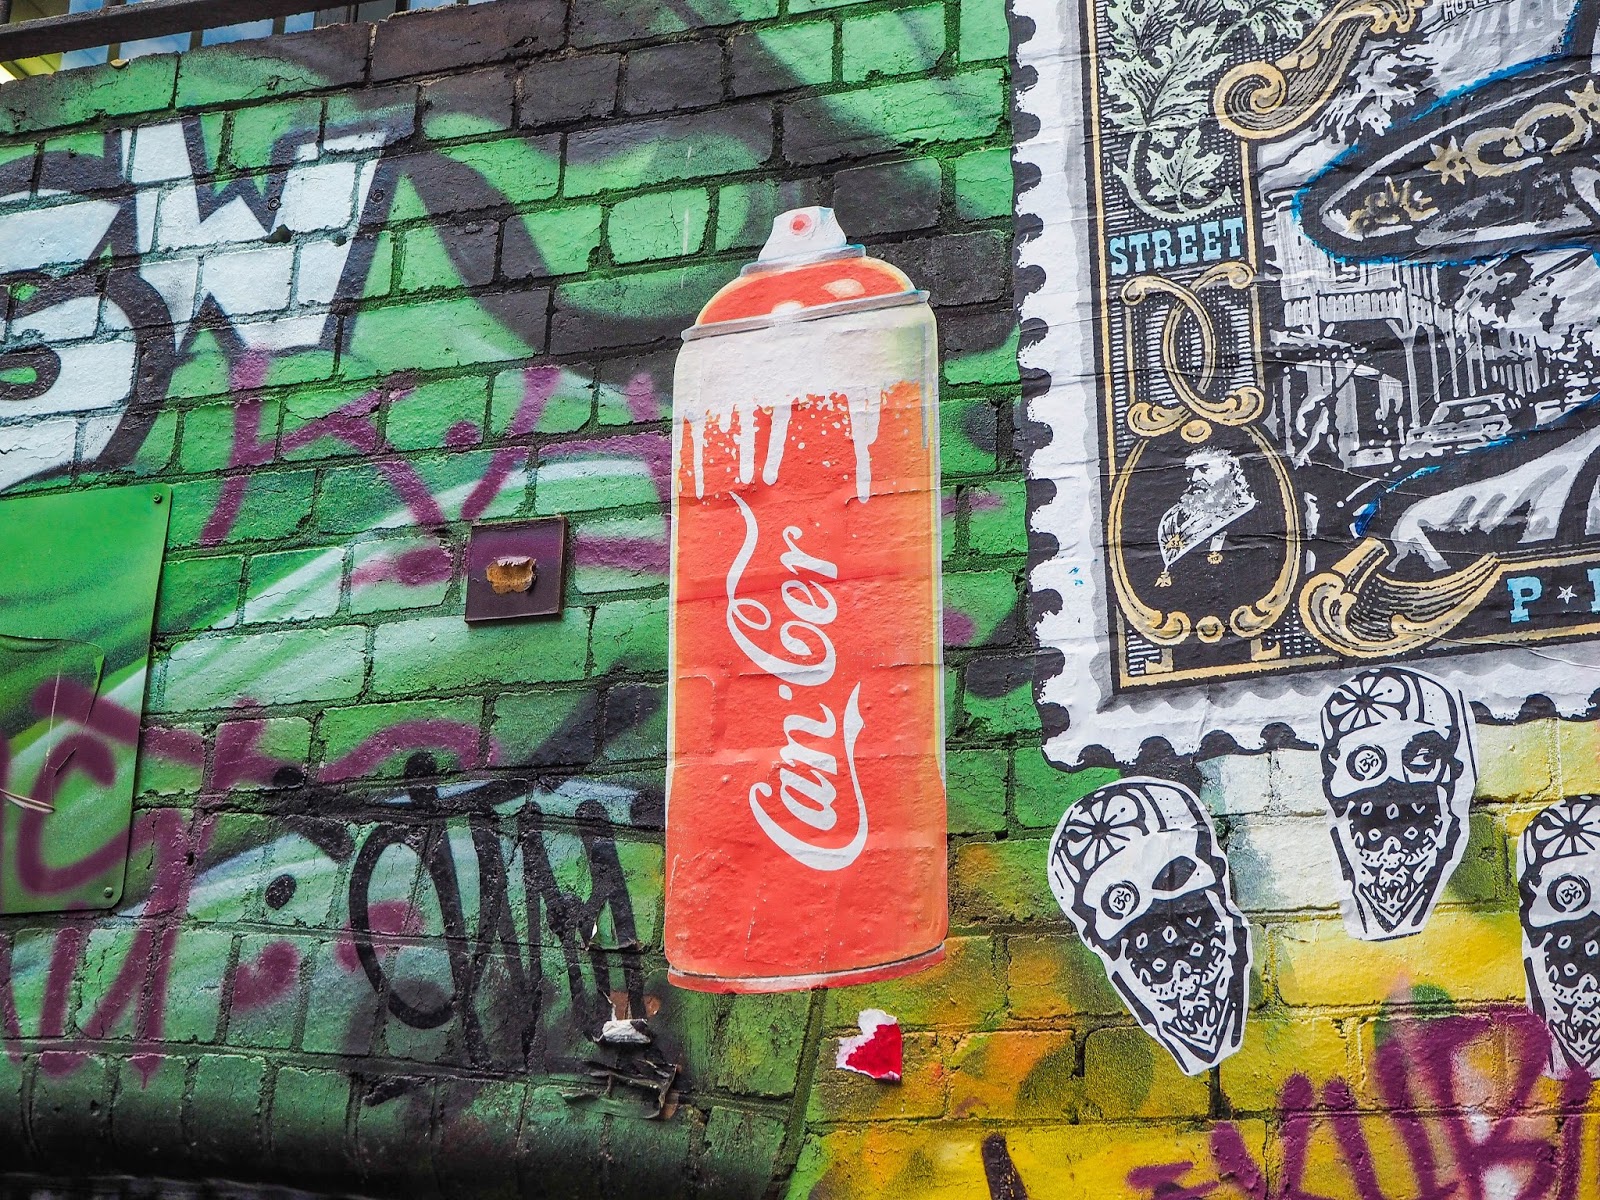 Hosier Lane street art in Melbourne